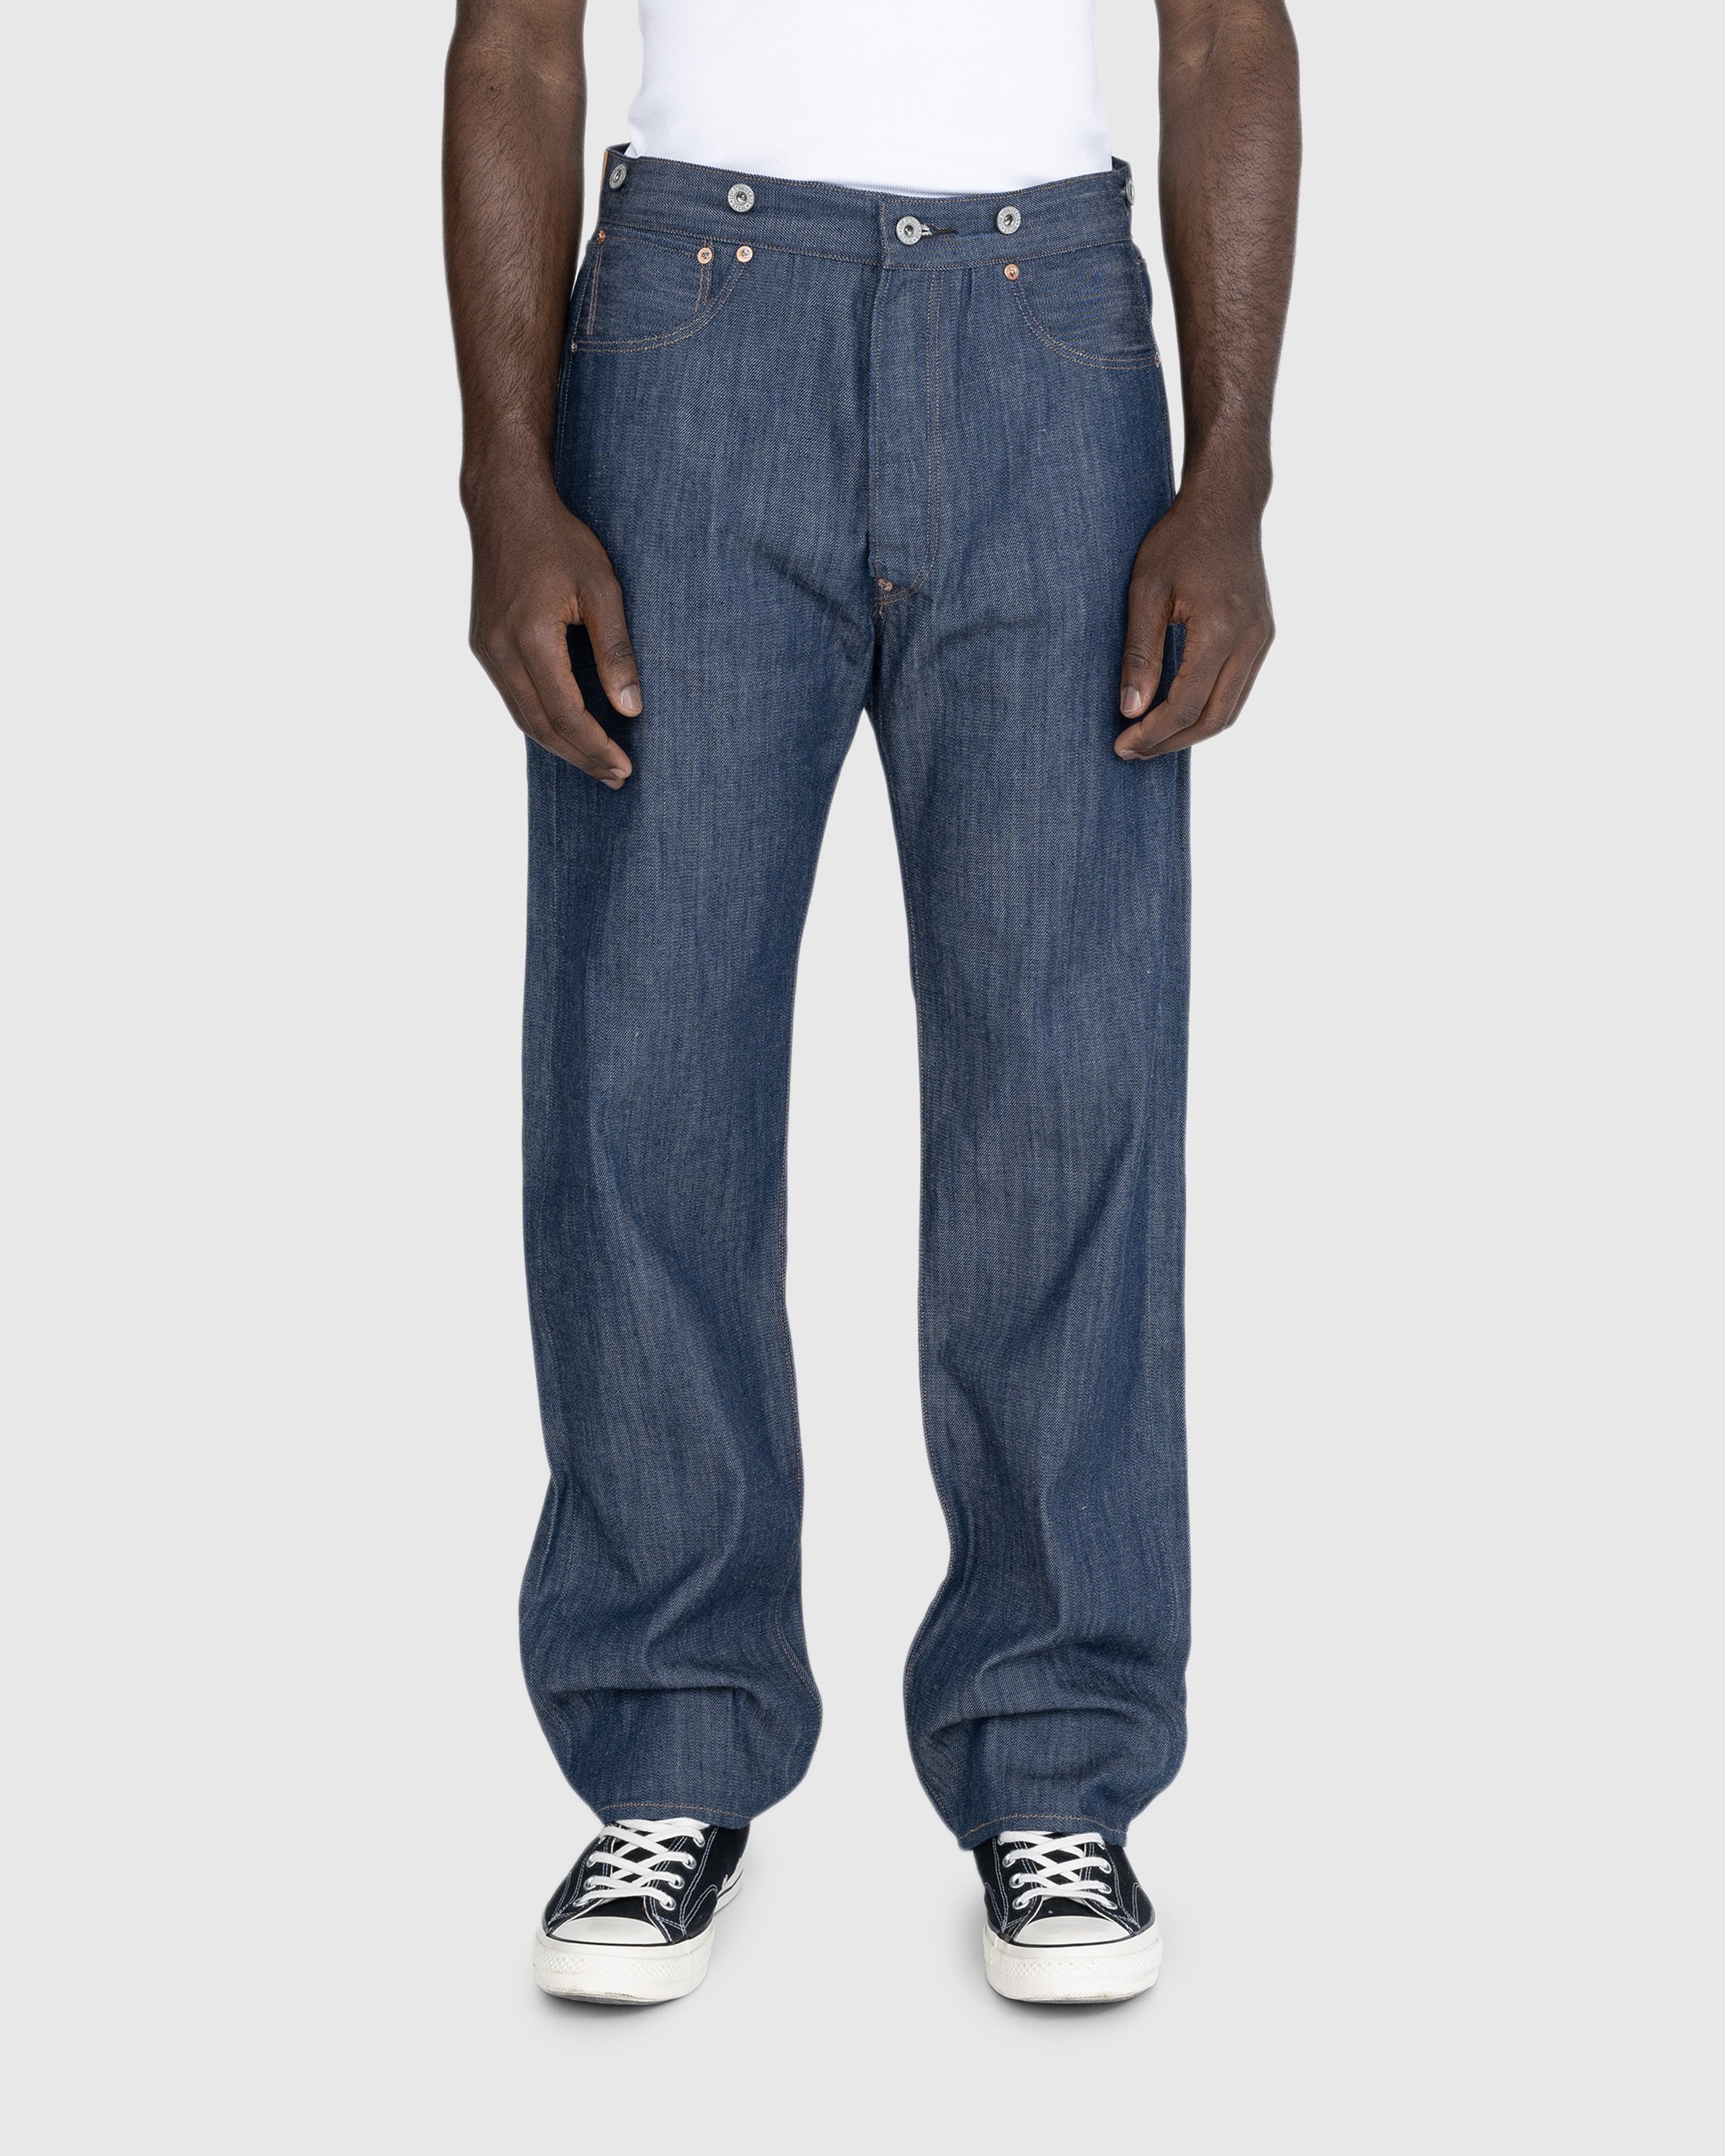 Levi's - 1901 501 Jeans Dark Indigo Flat Finish - Clothing - Blue - Image 3